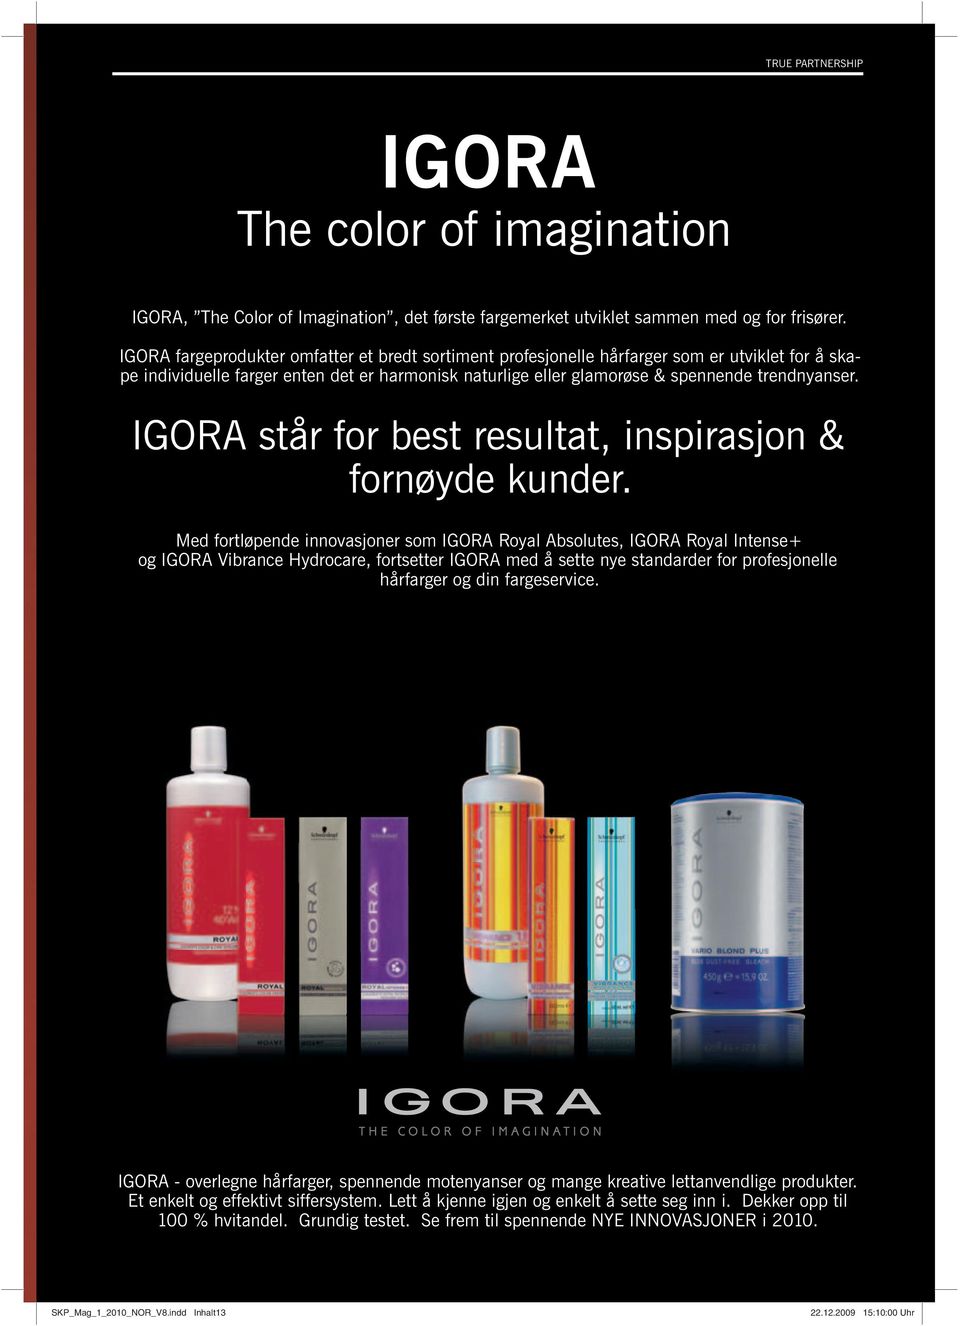 IGORA står for best resultat, inspirasjon & fornøyde kunder.